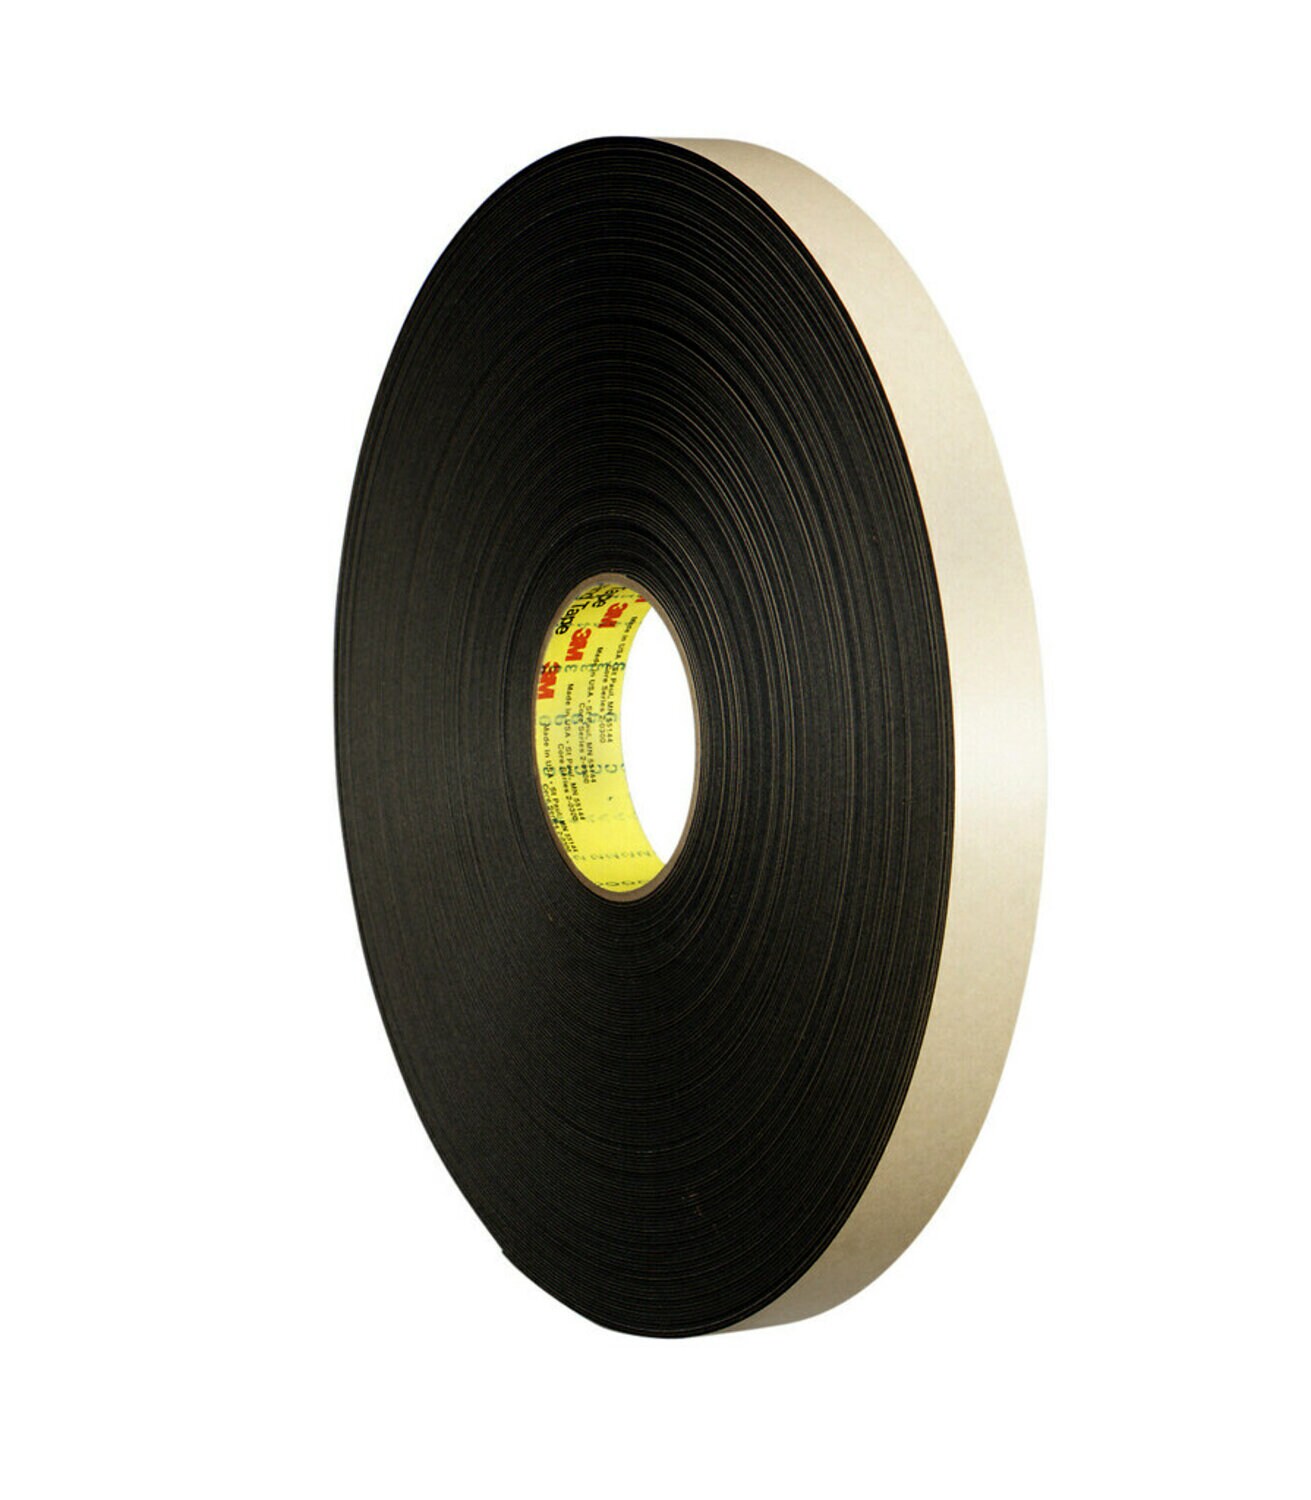 7010333918 - 3M Double Coated Polyethylene Foam Tape 4492B, Black, 2 in x 72 yd, 31
mil, 6 rolls per case